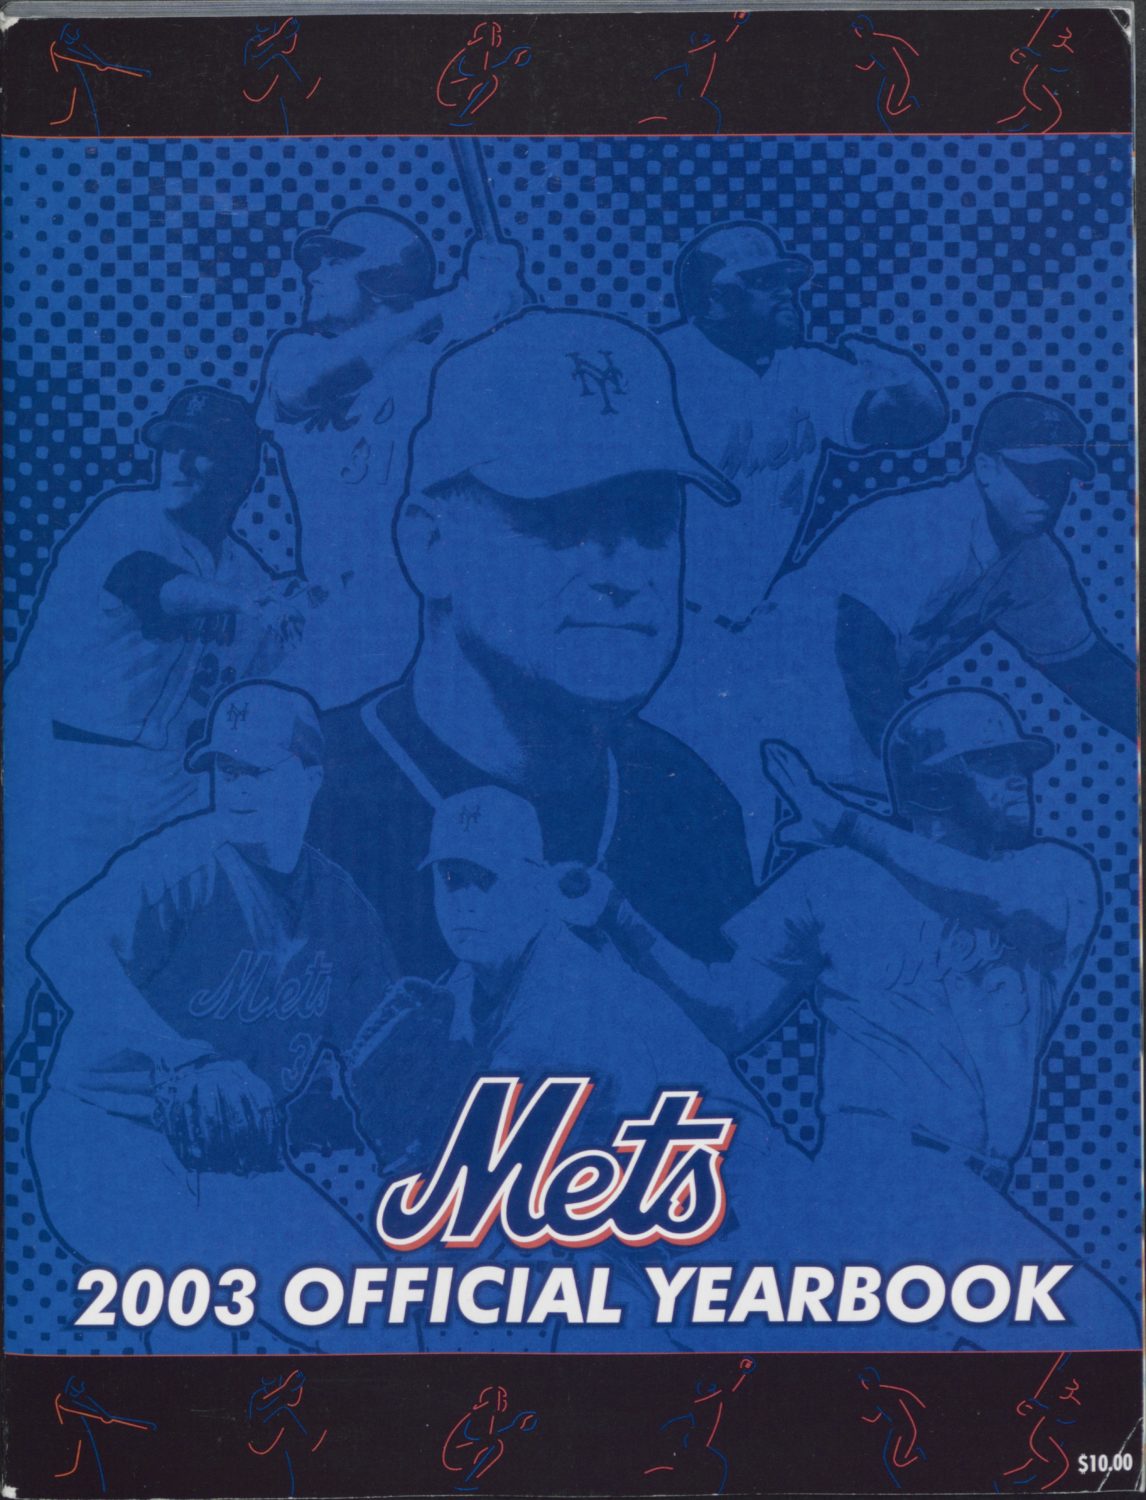 2003 Mets Yearbook: Art Howe Takes Over